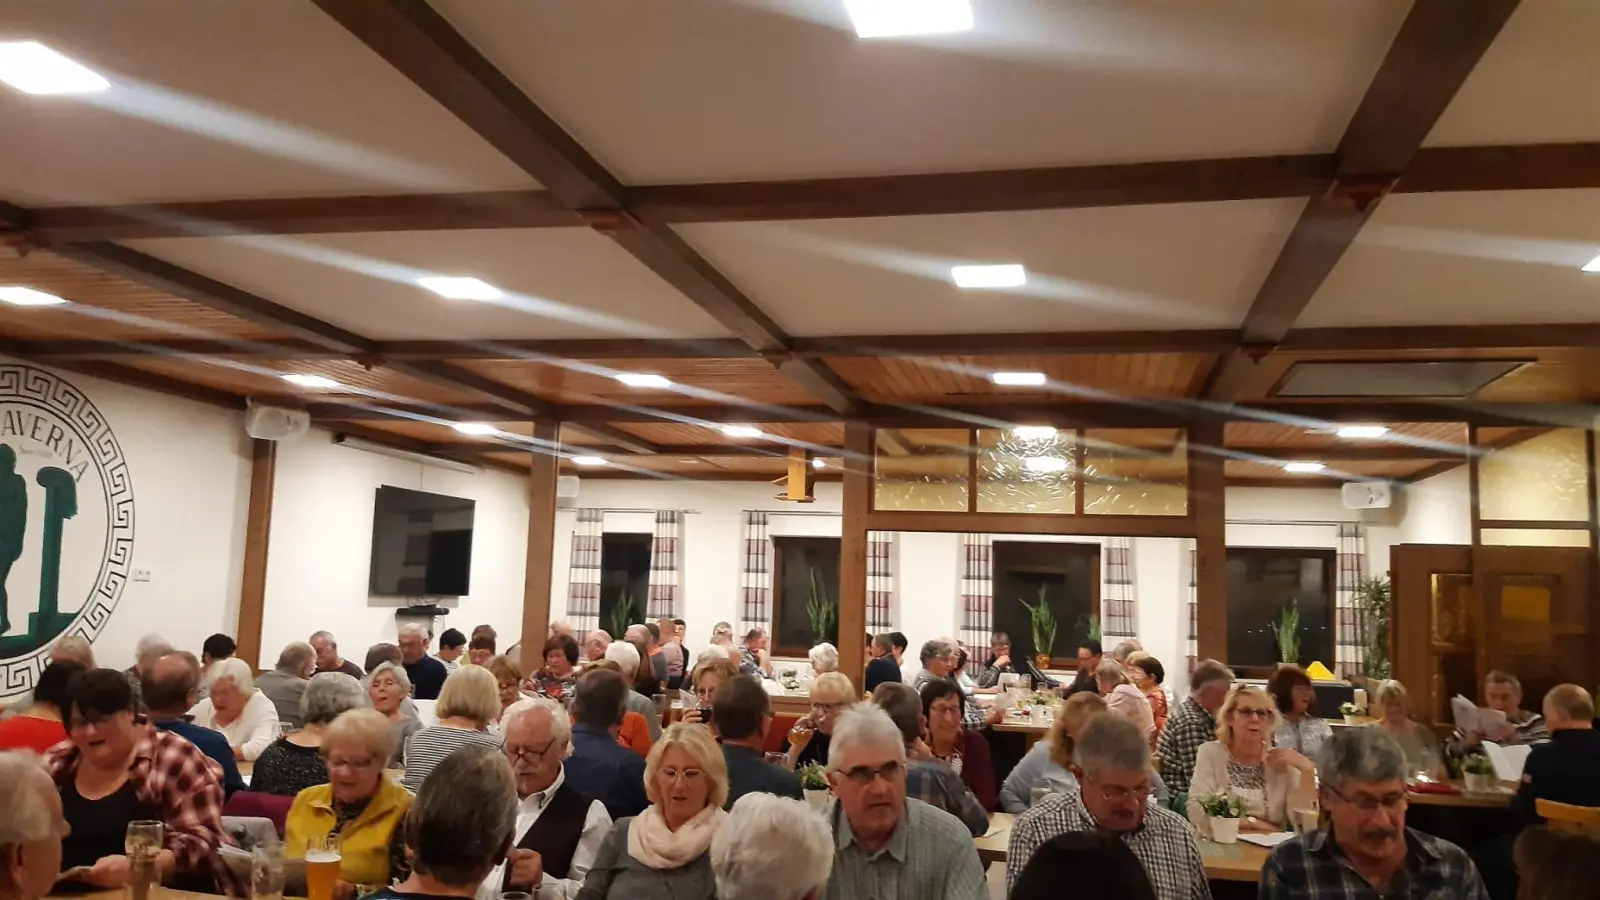 <b>Volles Haus</b> herrschte mit über 120 Besuchern beim Singen und Musizieren im Gebenhofener Sportheim.  (Foto: nsi)